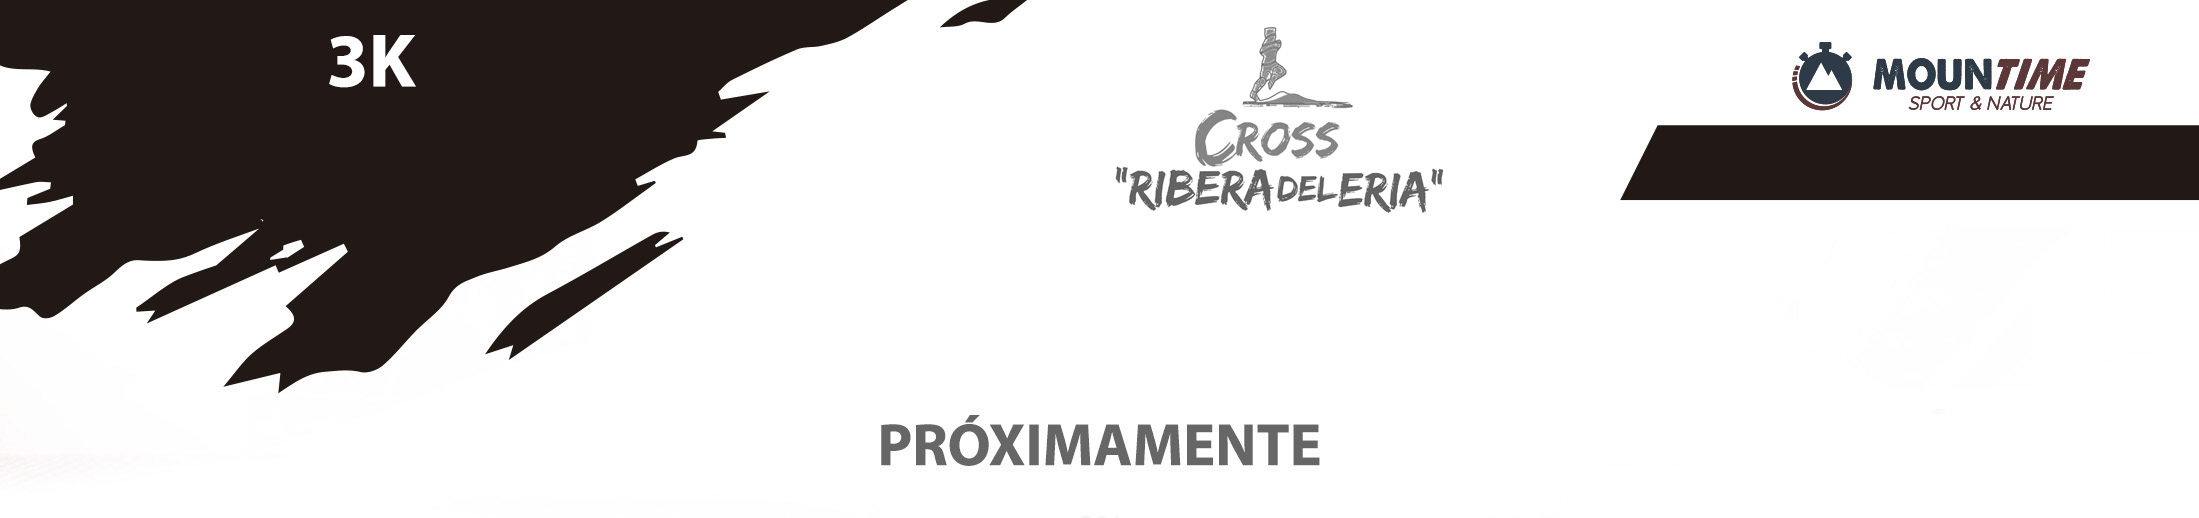 Cross Ribera del Eria - Perfil 3K - Mountime